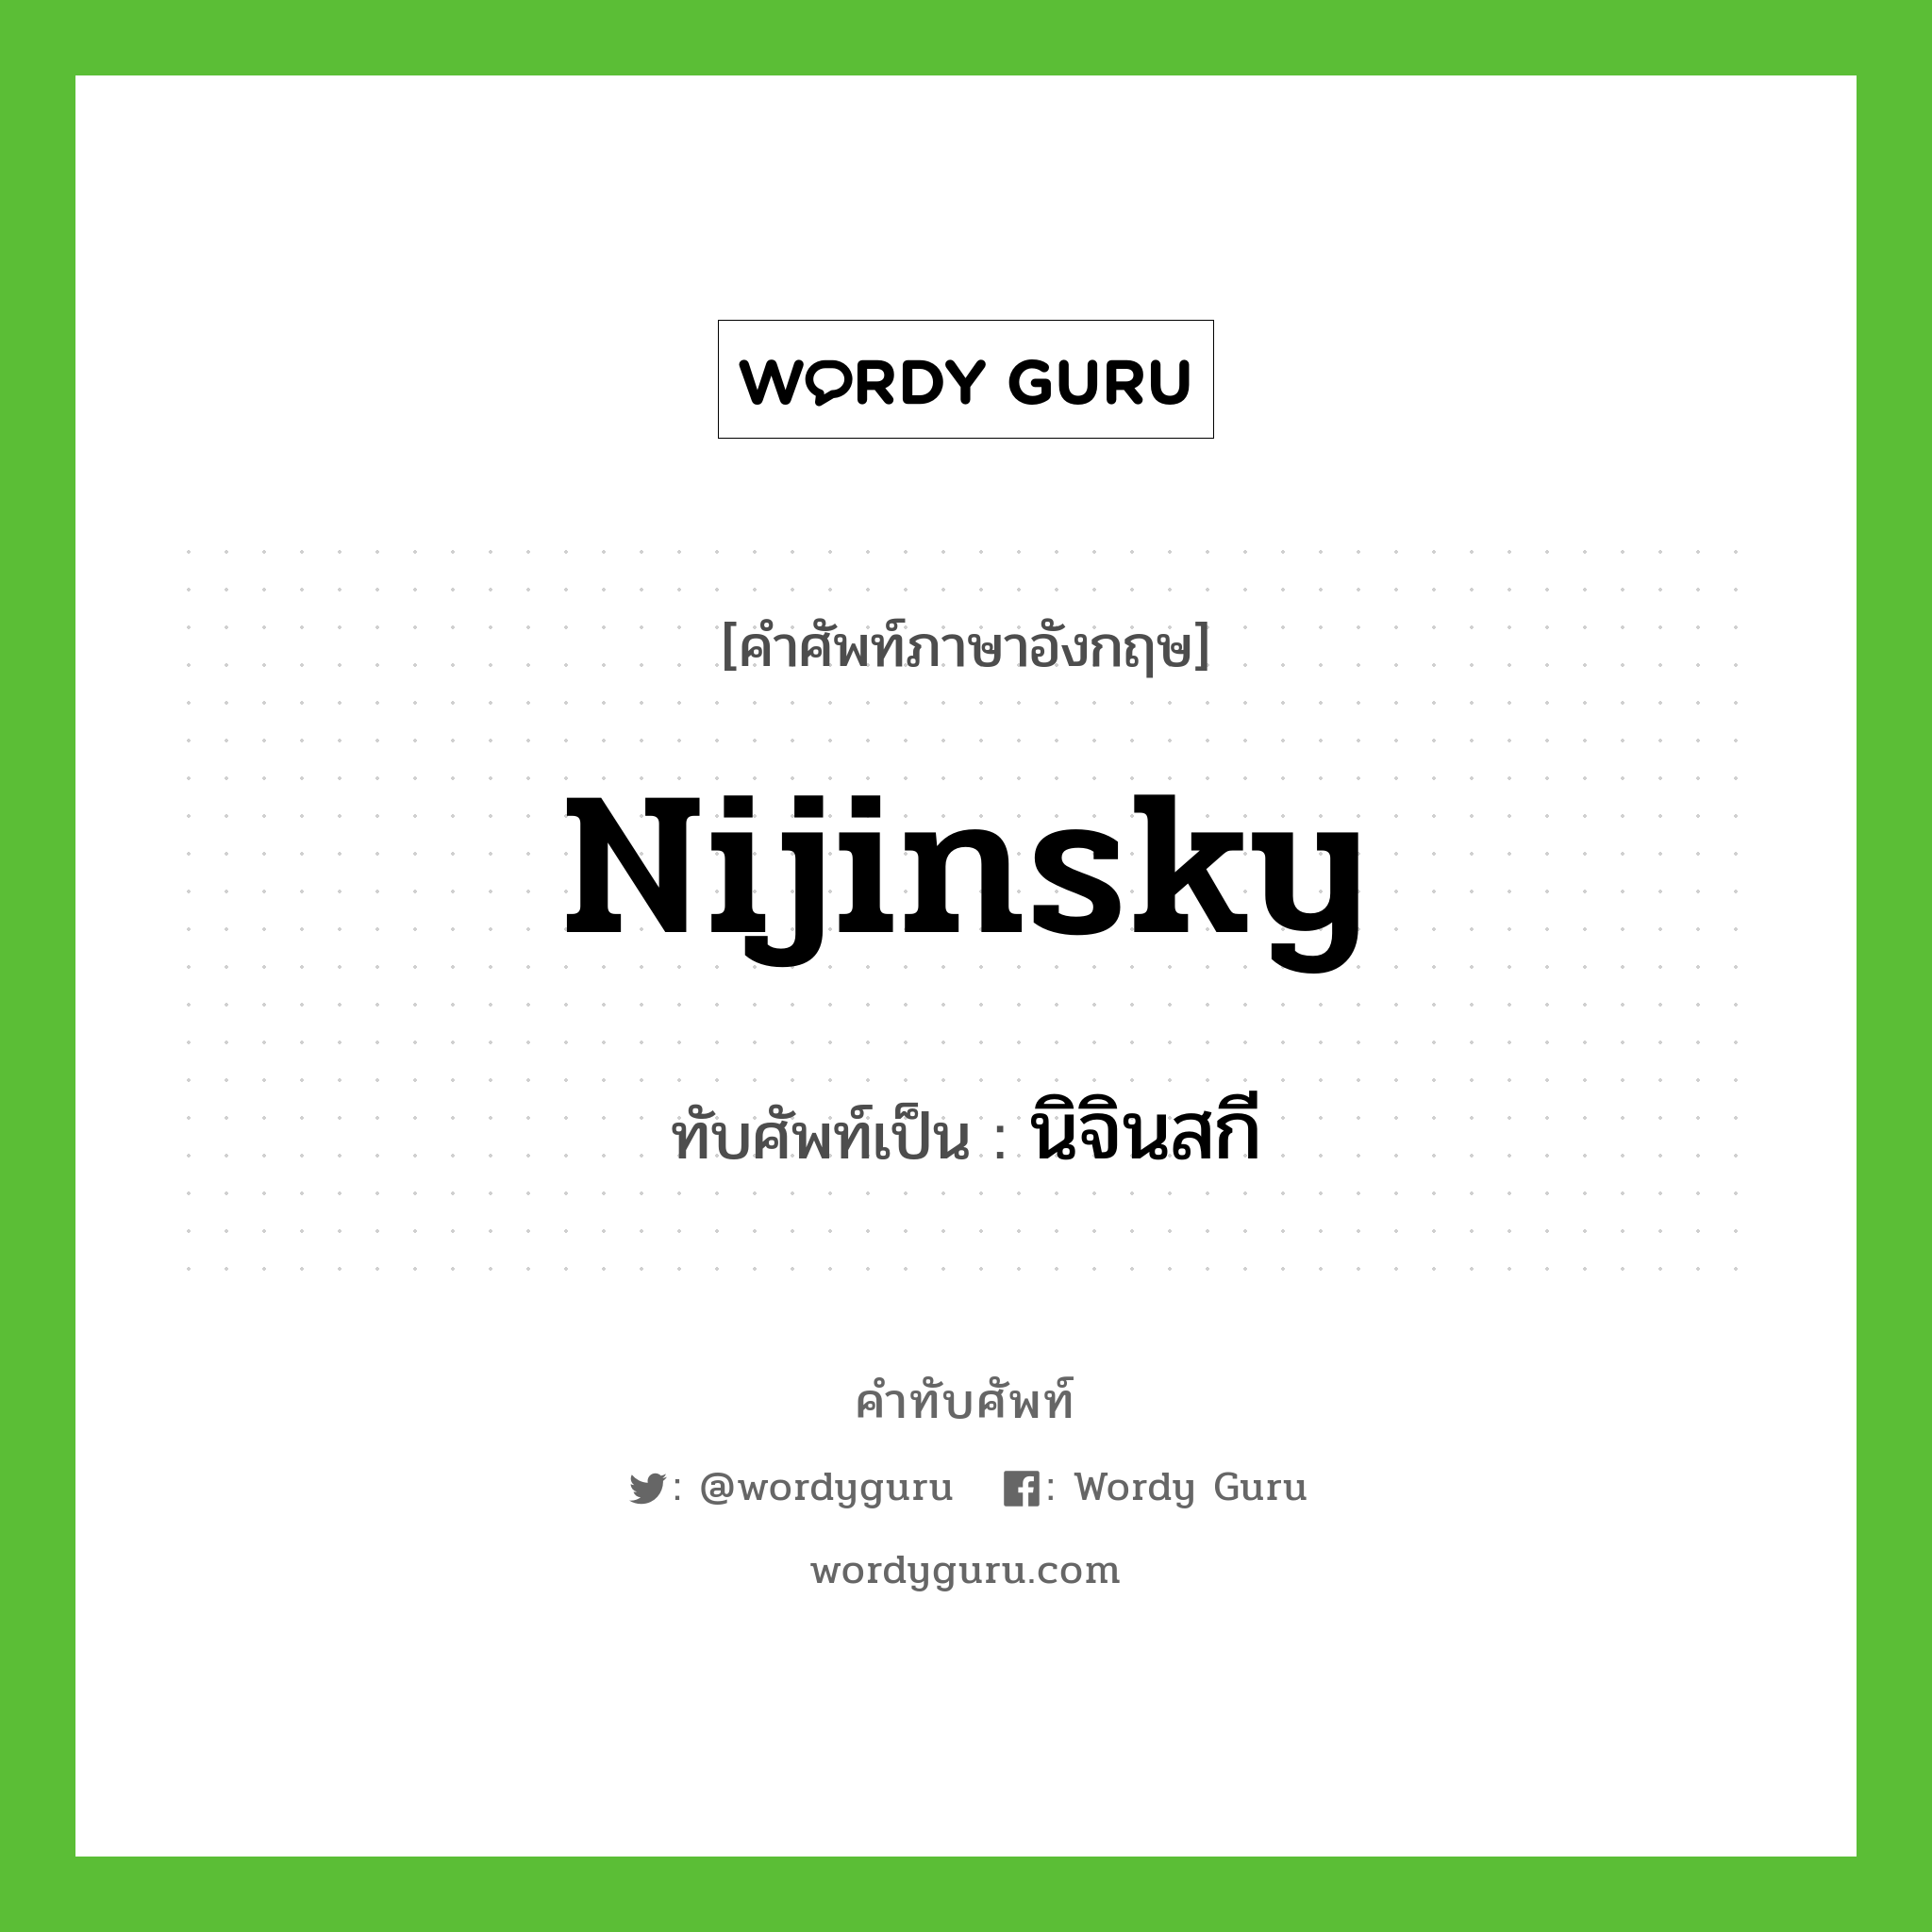 นิจินสกี เขียนอย่างไร?, คำศัพท์ภาษาอังกฤษ นิจินสกี ทับศัพท์เป็น Nijinsky